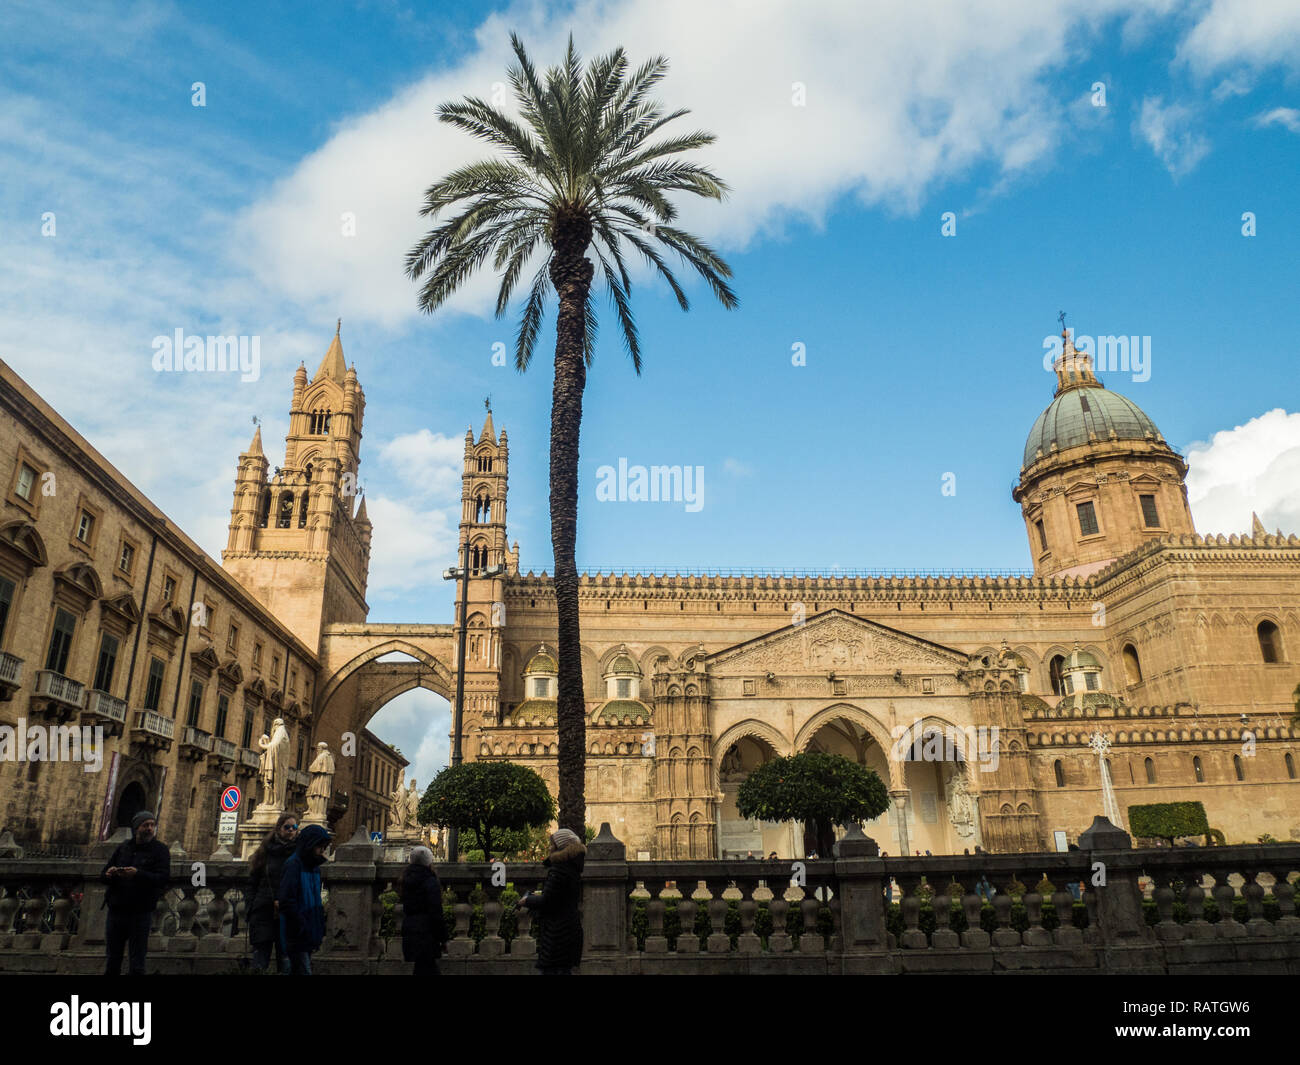 La cathédrale de Palerme, ville de Palerme, Sicile, Italie Banque D'Images